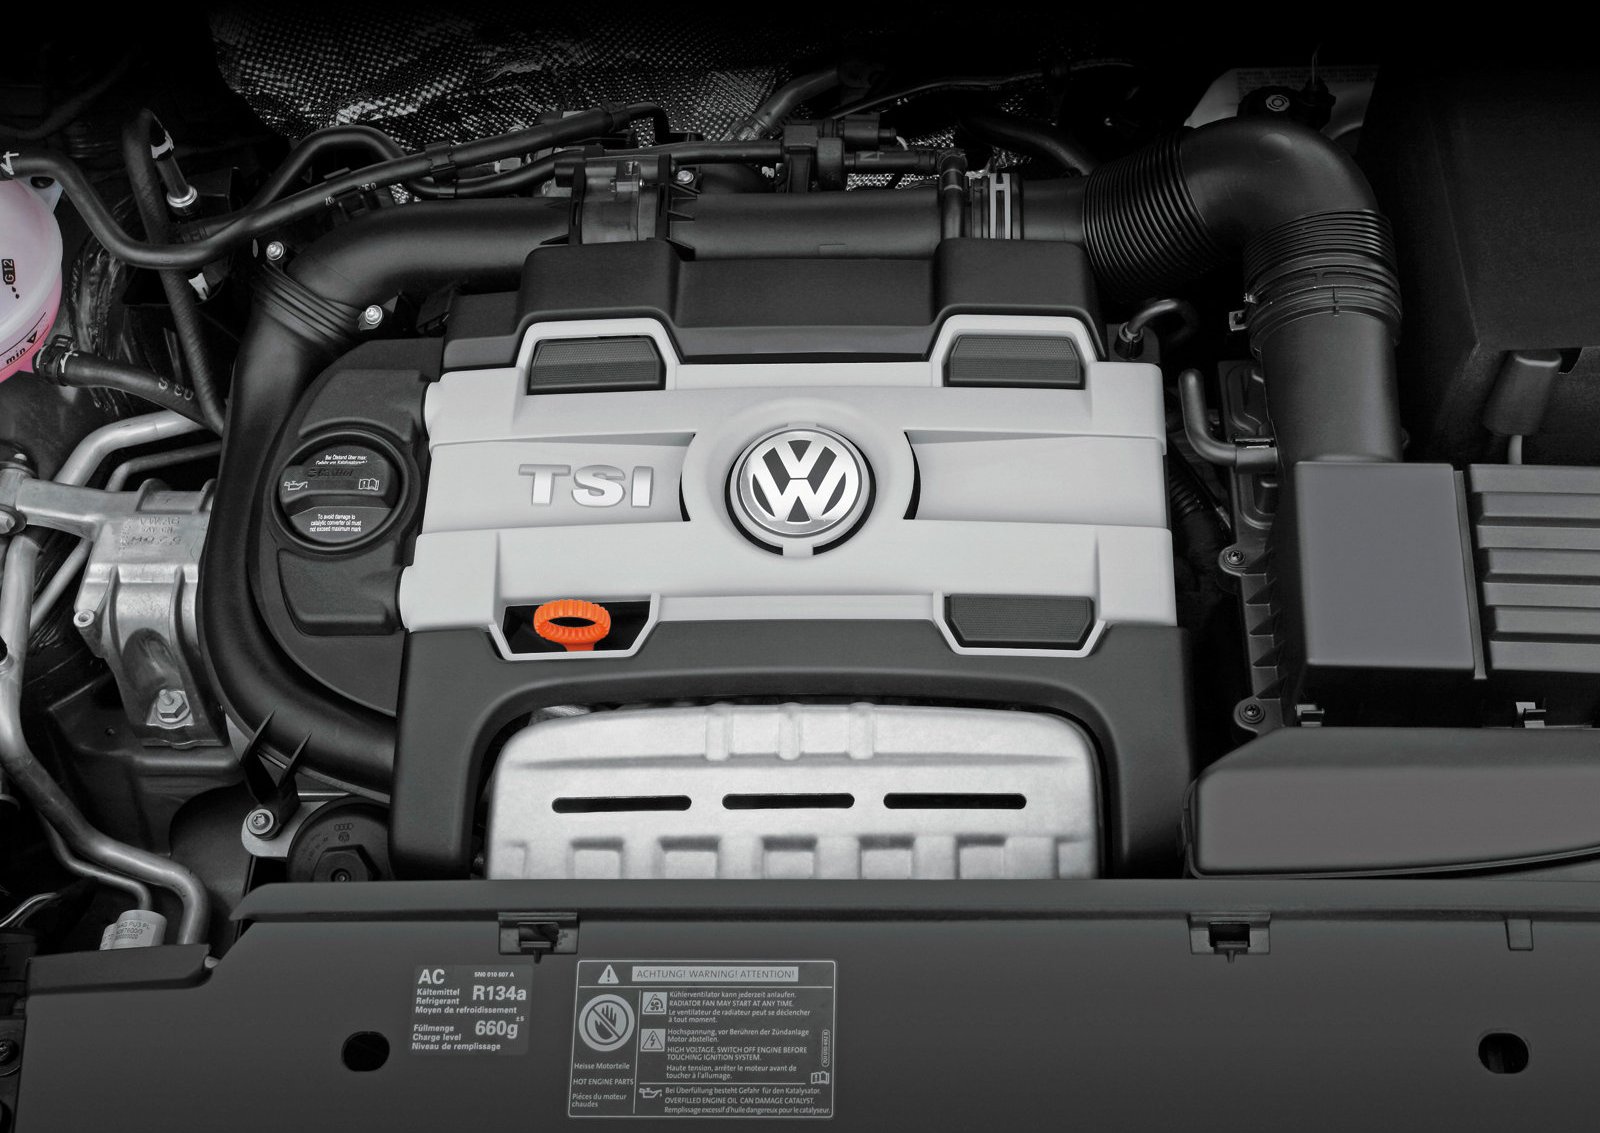 Двигатель тигуан 1.4 150. Двигатель Volkswagen Tiguan 1.4 TSI. Двигатель Volkswagen Tiguan 2.0 TSI. Тигуан 1.4 150 мотор. Мотор Фольксваген 1.4 TSI.